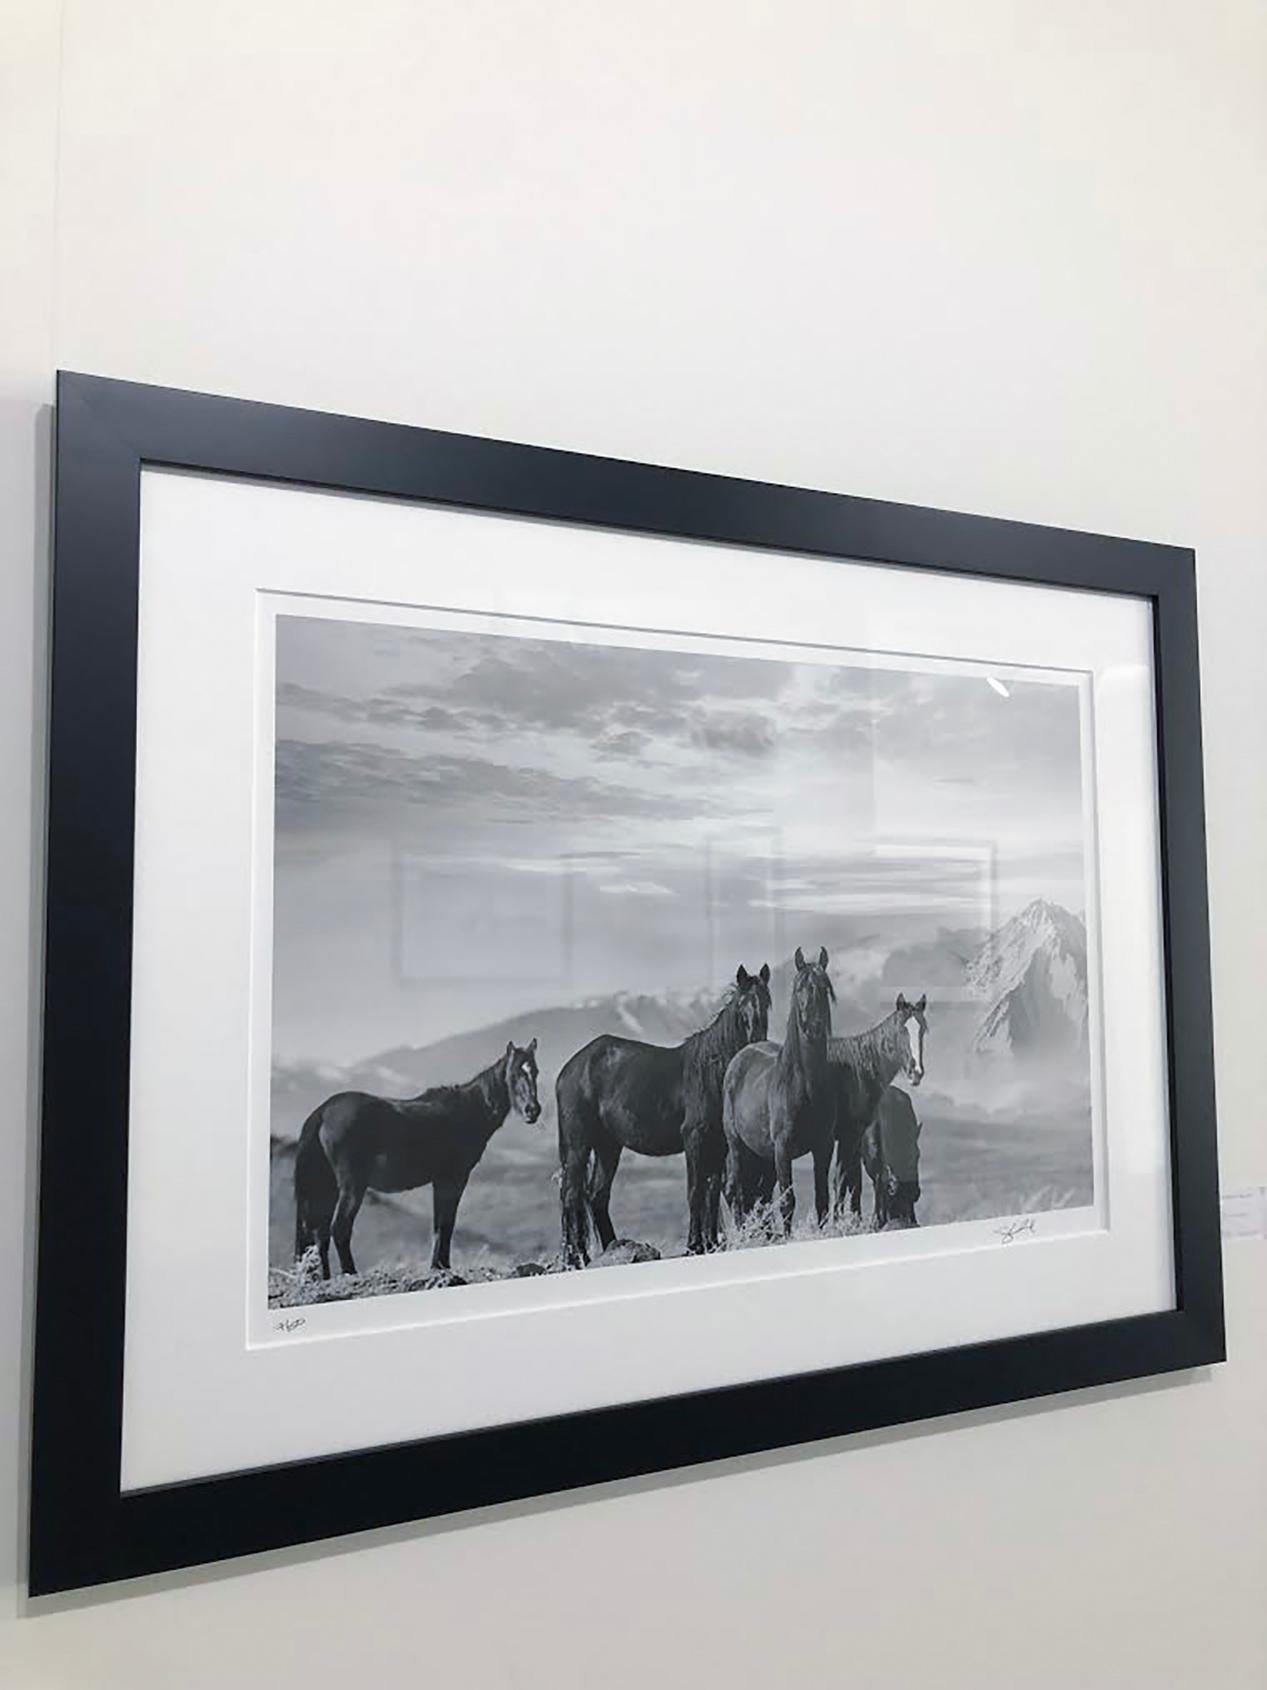 Il s'agit d'une photographie contemporaine en noir et blanc de Mustangs sauvages. 
